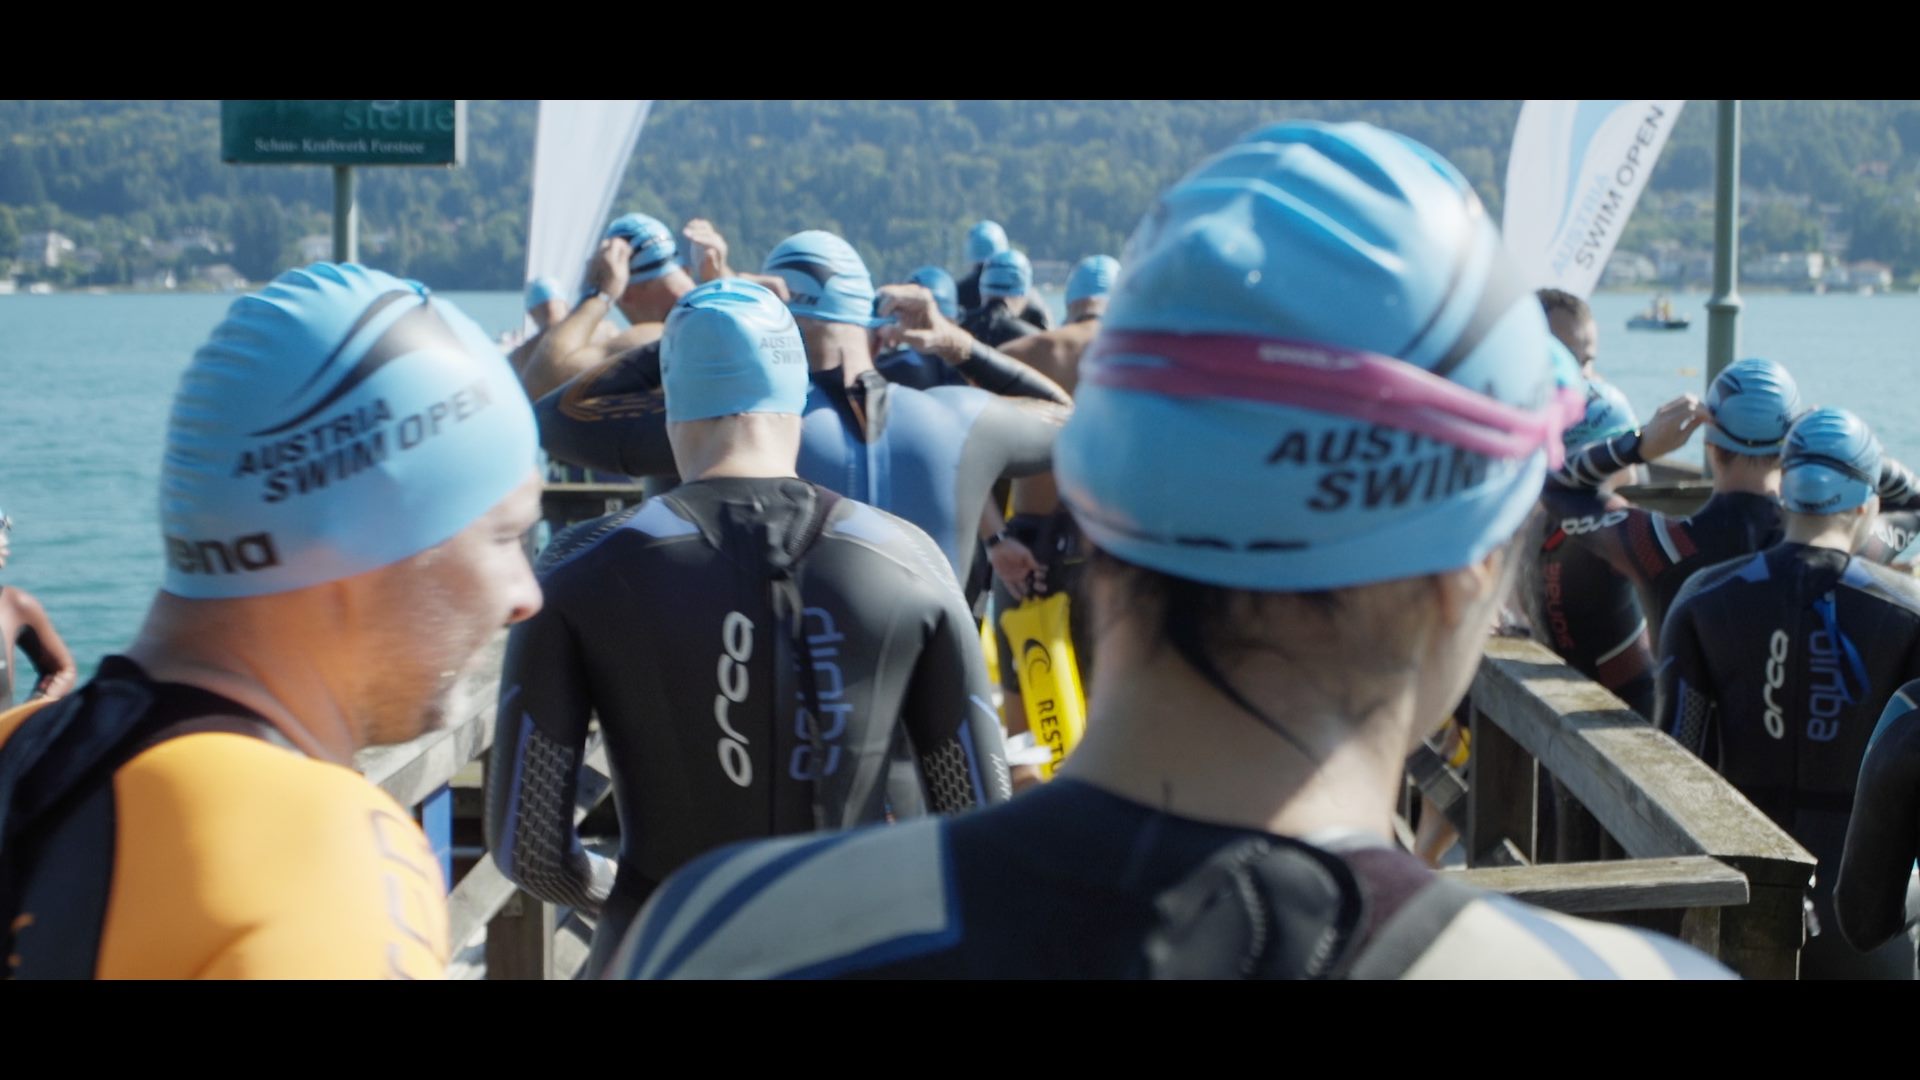 Eine Gruppe von Menschen in Neoprenanzügen, die an den Austria Swim Open teilnehmen, steht auf einem Dock.